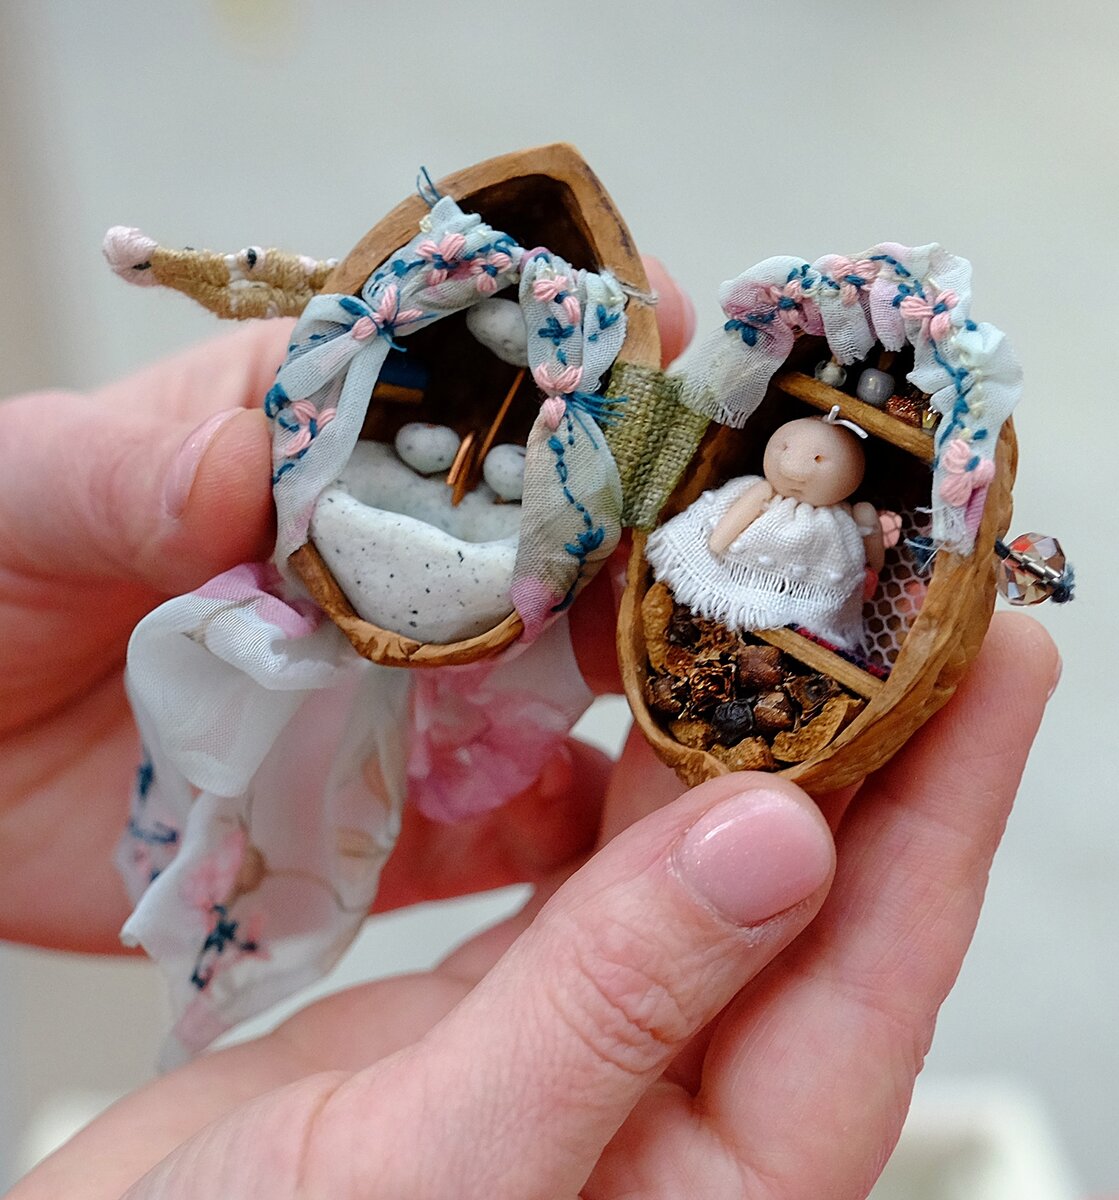 Мир внутри орешка. Невероятные кукольные домики внутри грецких орехов делает мастерица из Архангельска